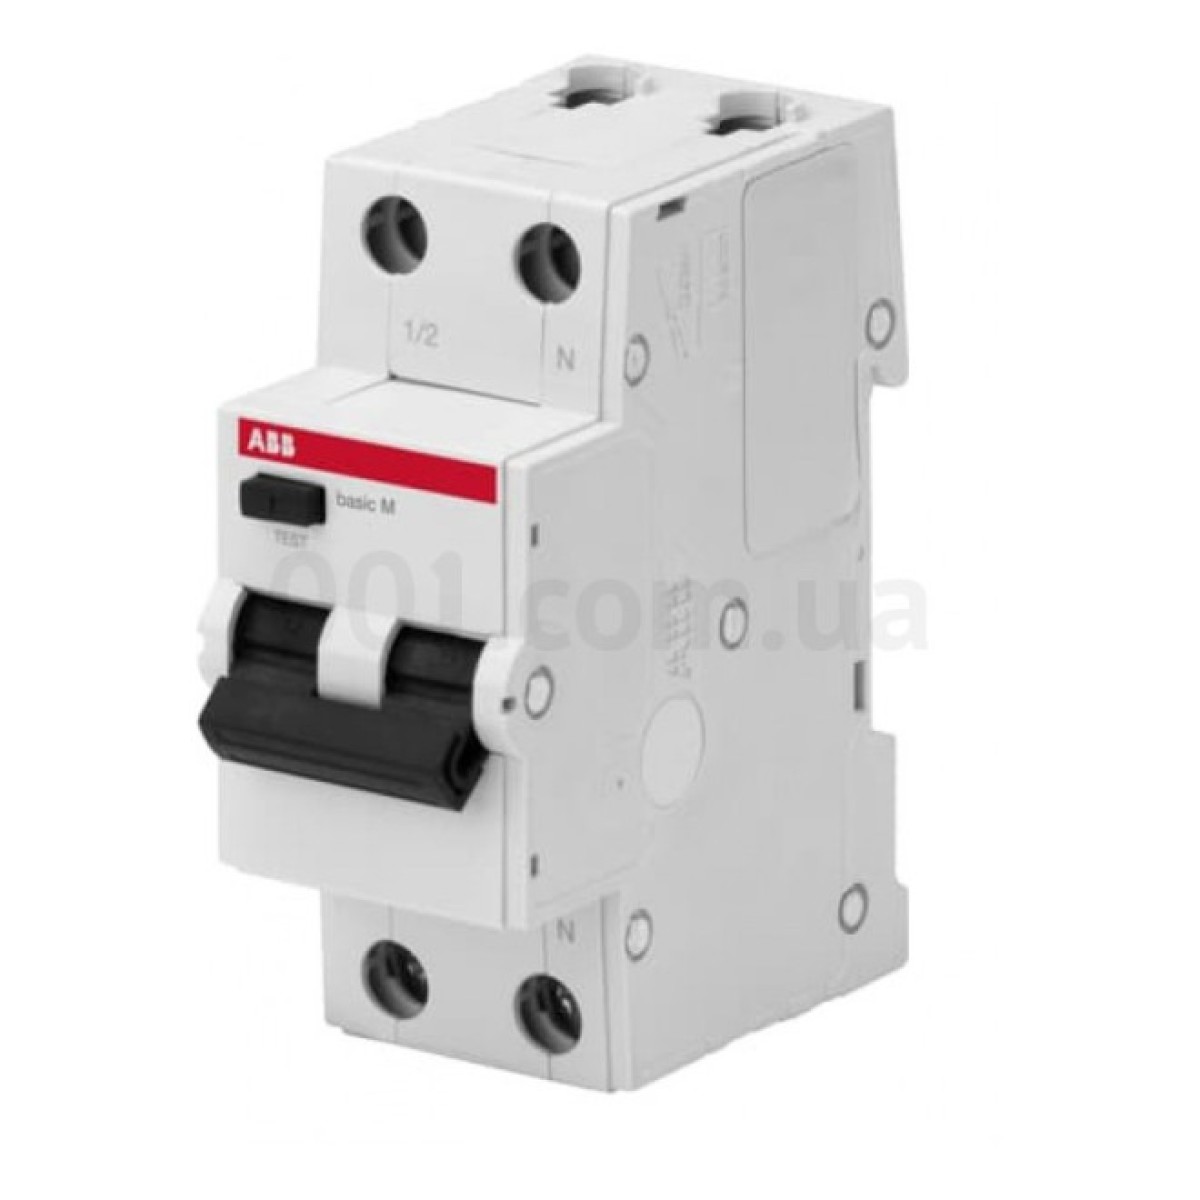 Автоматичний вимикач диференційного струму BMR415C32 1P+N/32А/30мА тип AC BASIC M, ABB 256_256.jpg